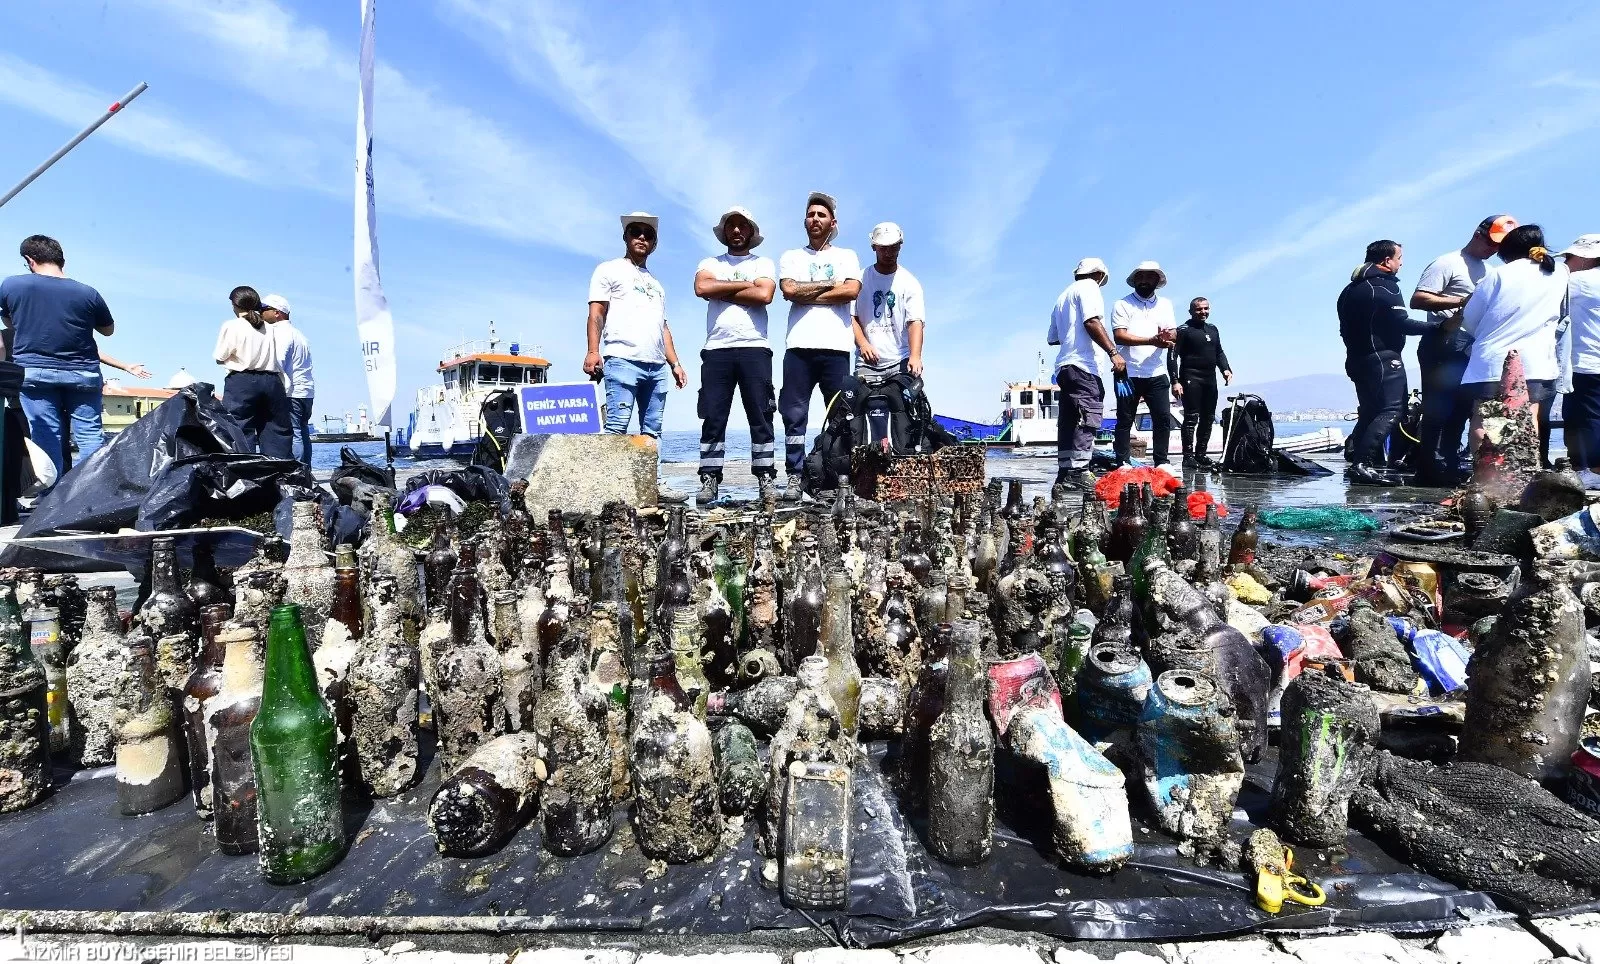 İzmir Büyükşehir Belediyesi, 5 Haziran Dünya Çevre Günü kapsamında Körfez'de dip temizliği gerçekleştirdi. 